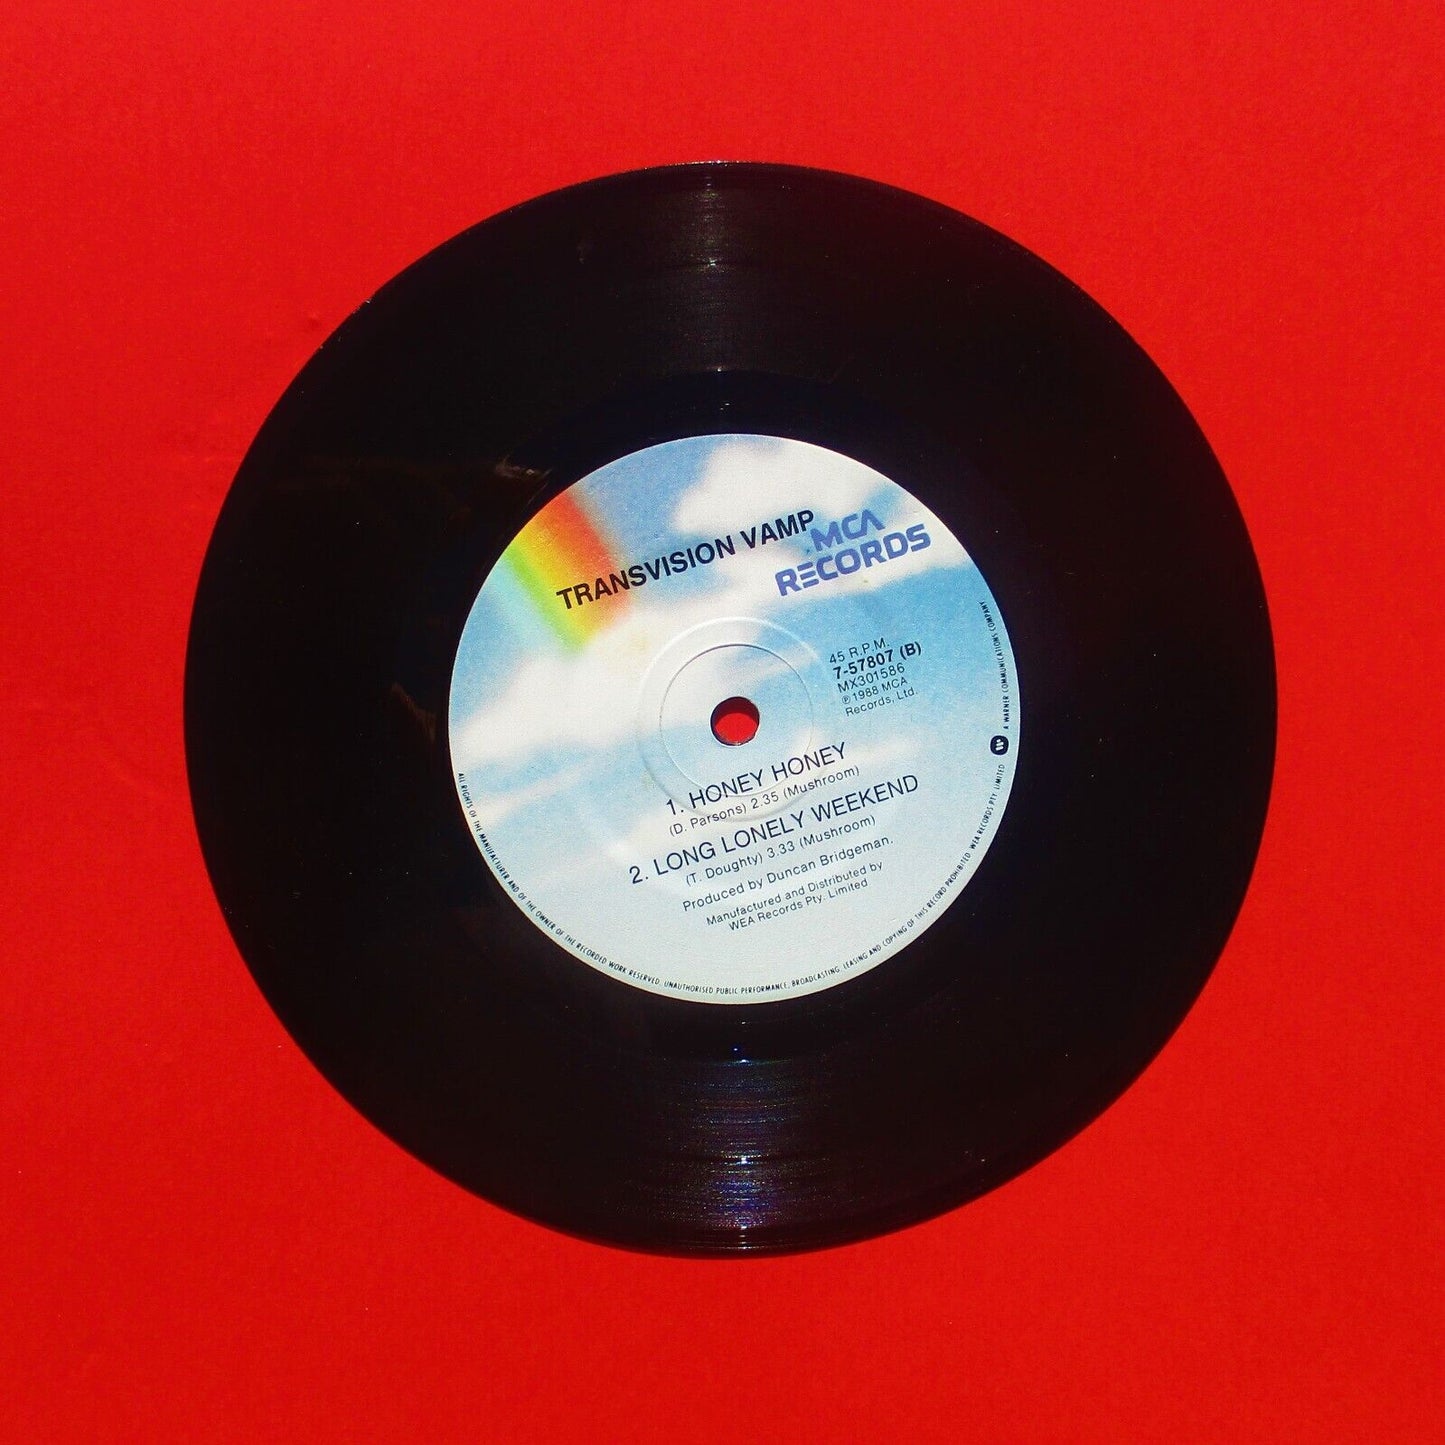 Transvision Vamp ‎Revolution Baby Vinyl 7" Single 1988 Australian Pressing